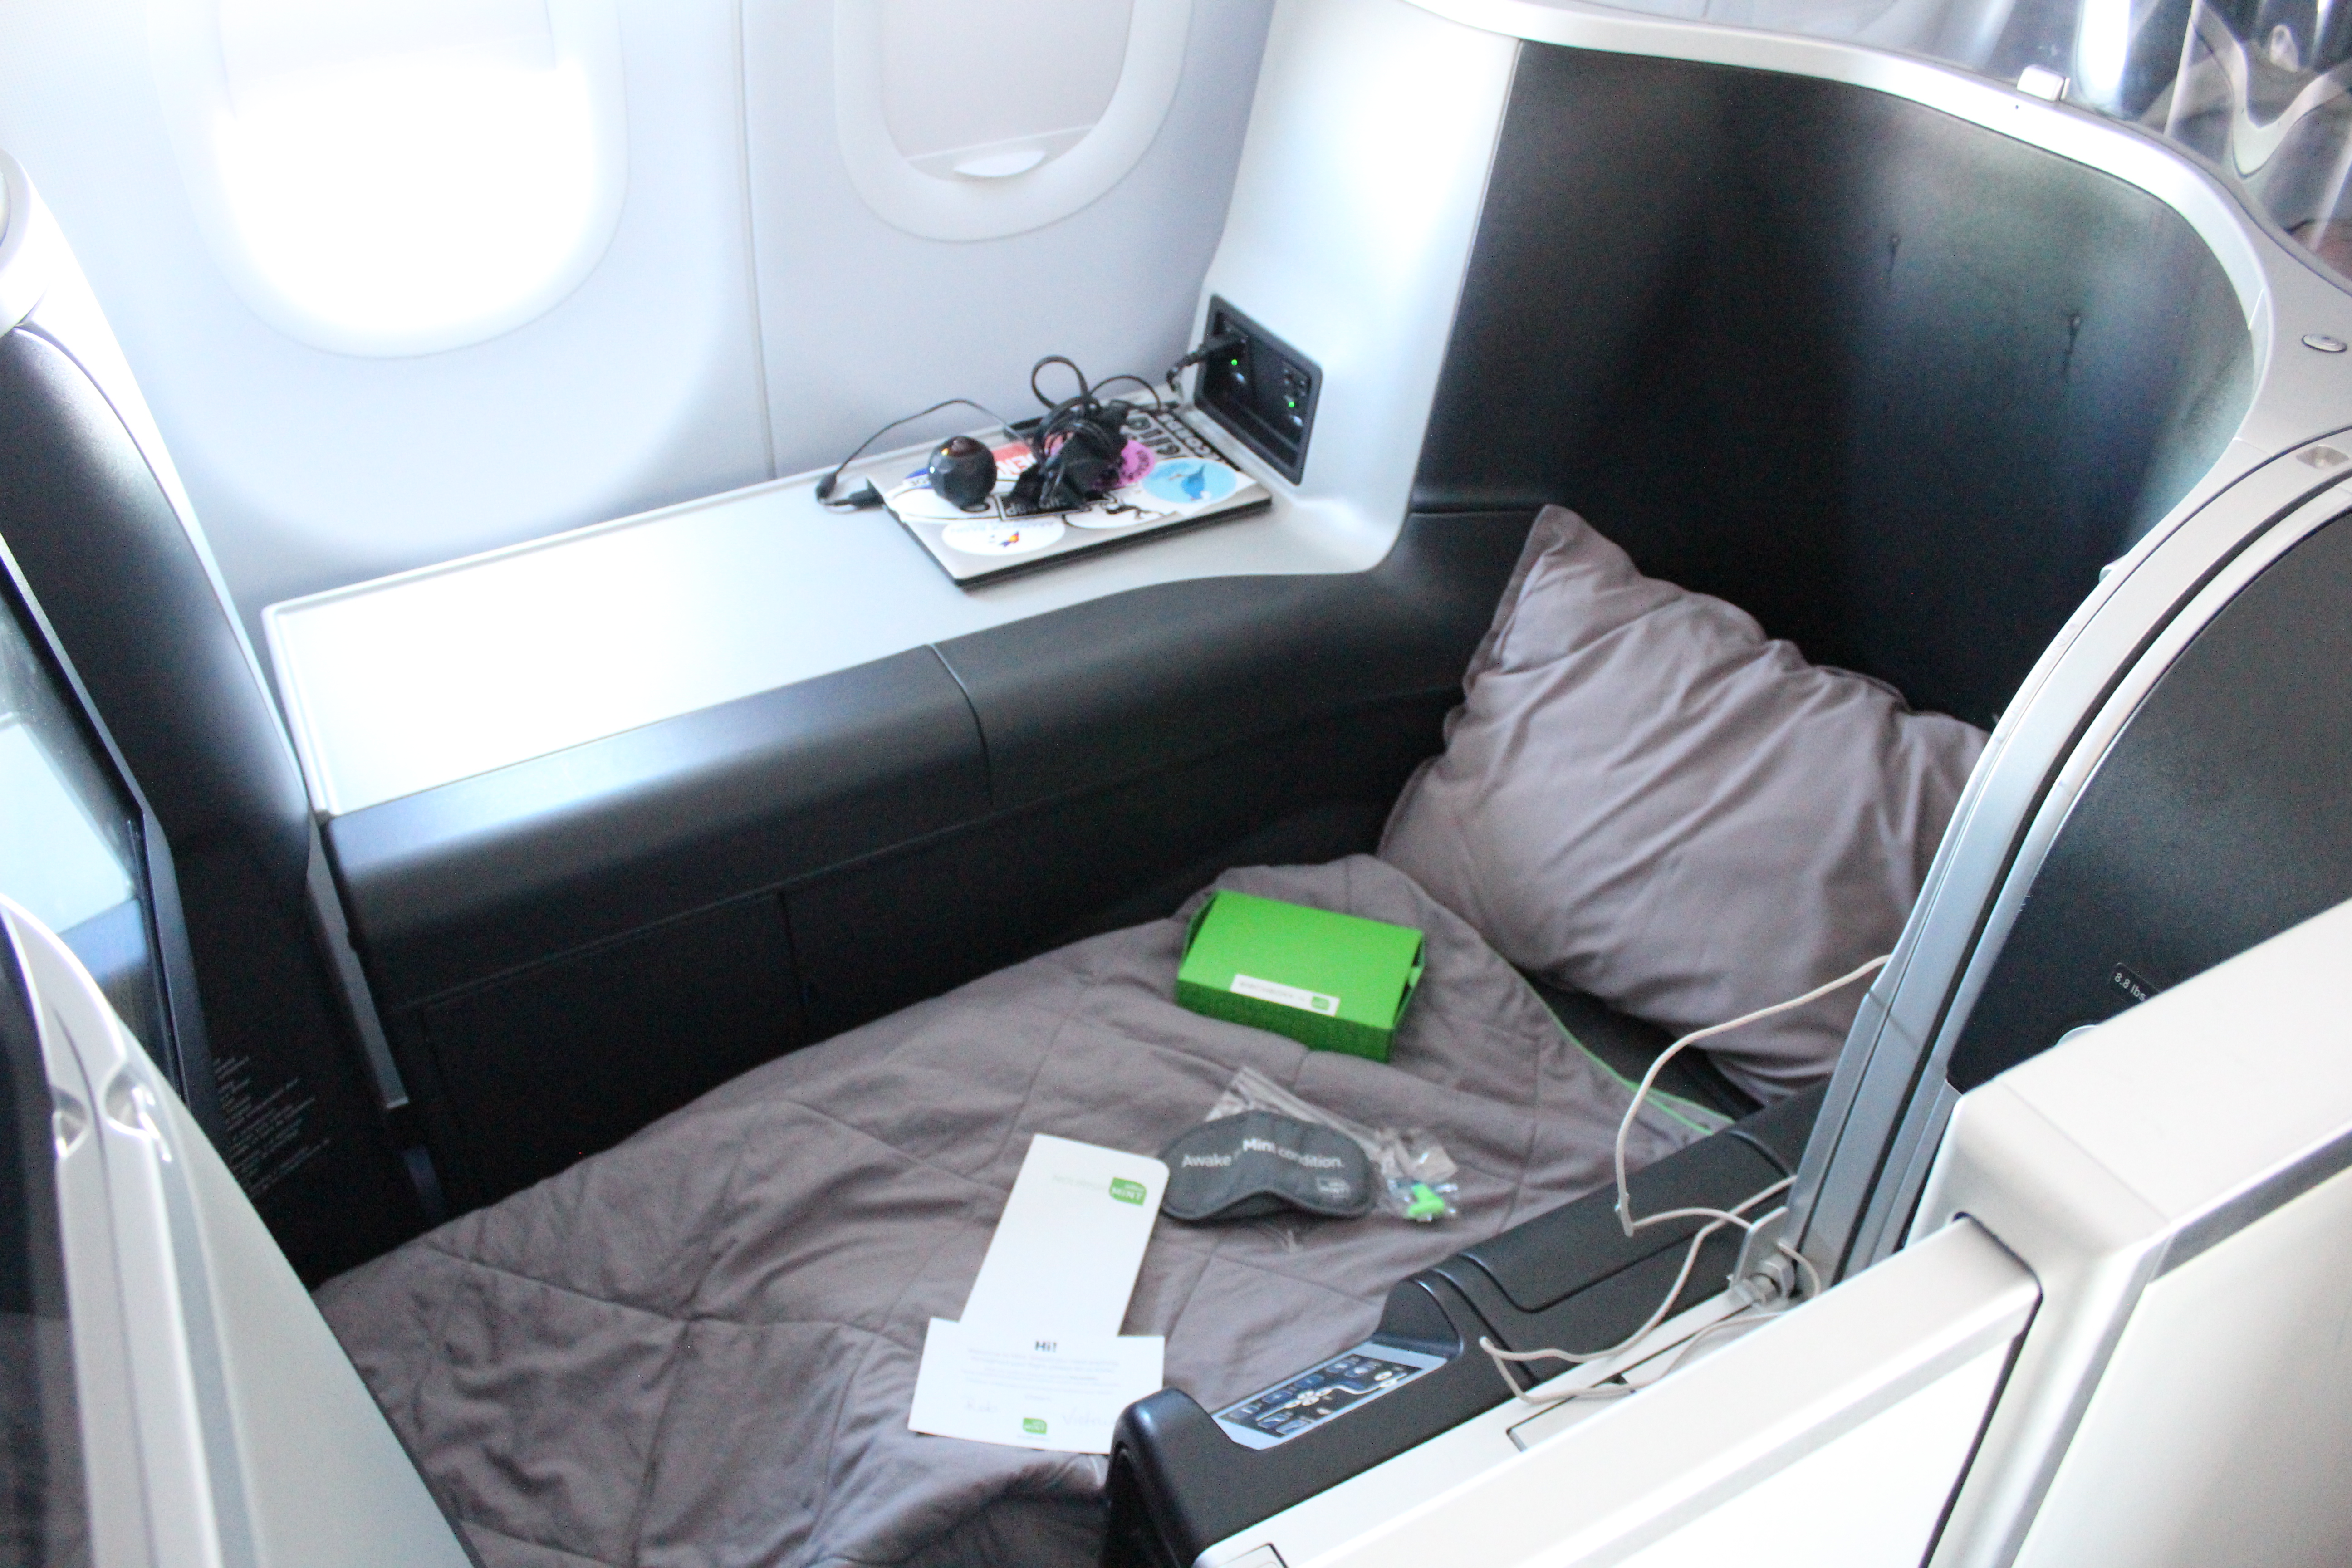 JetBlue Mint Class Suite Bed